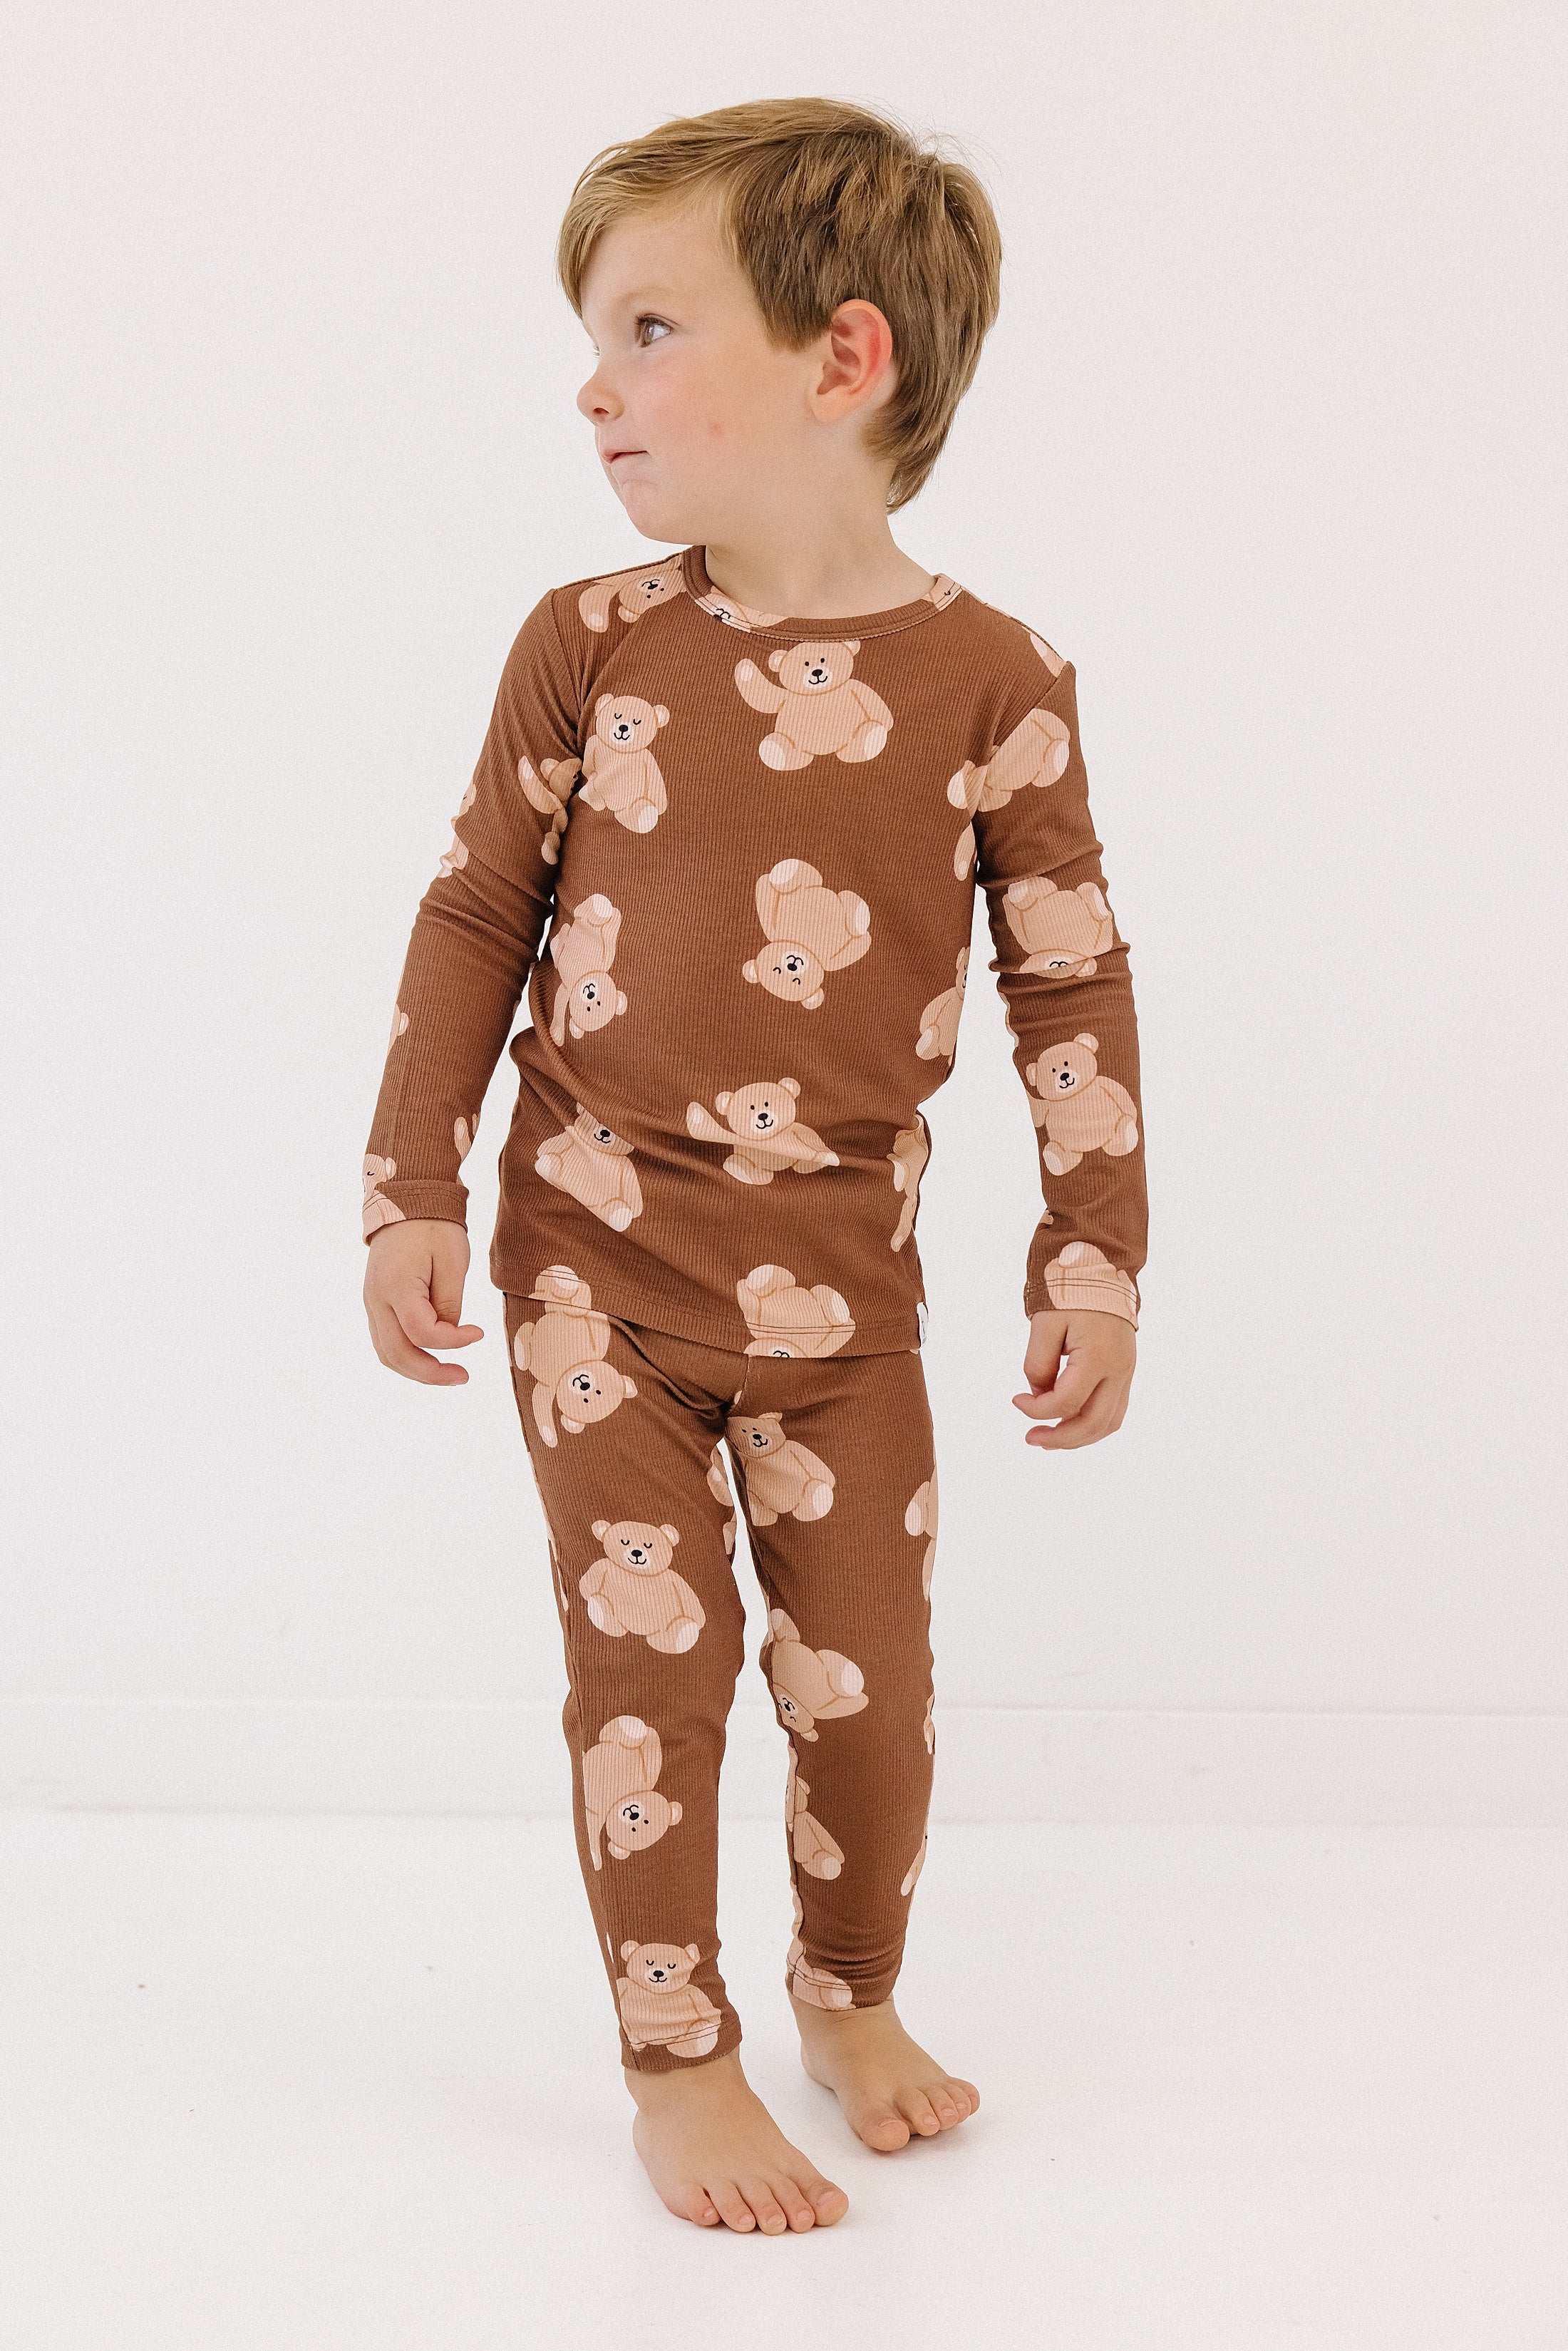 Bear Pajama Set